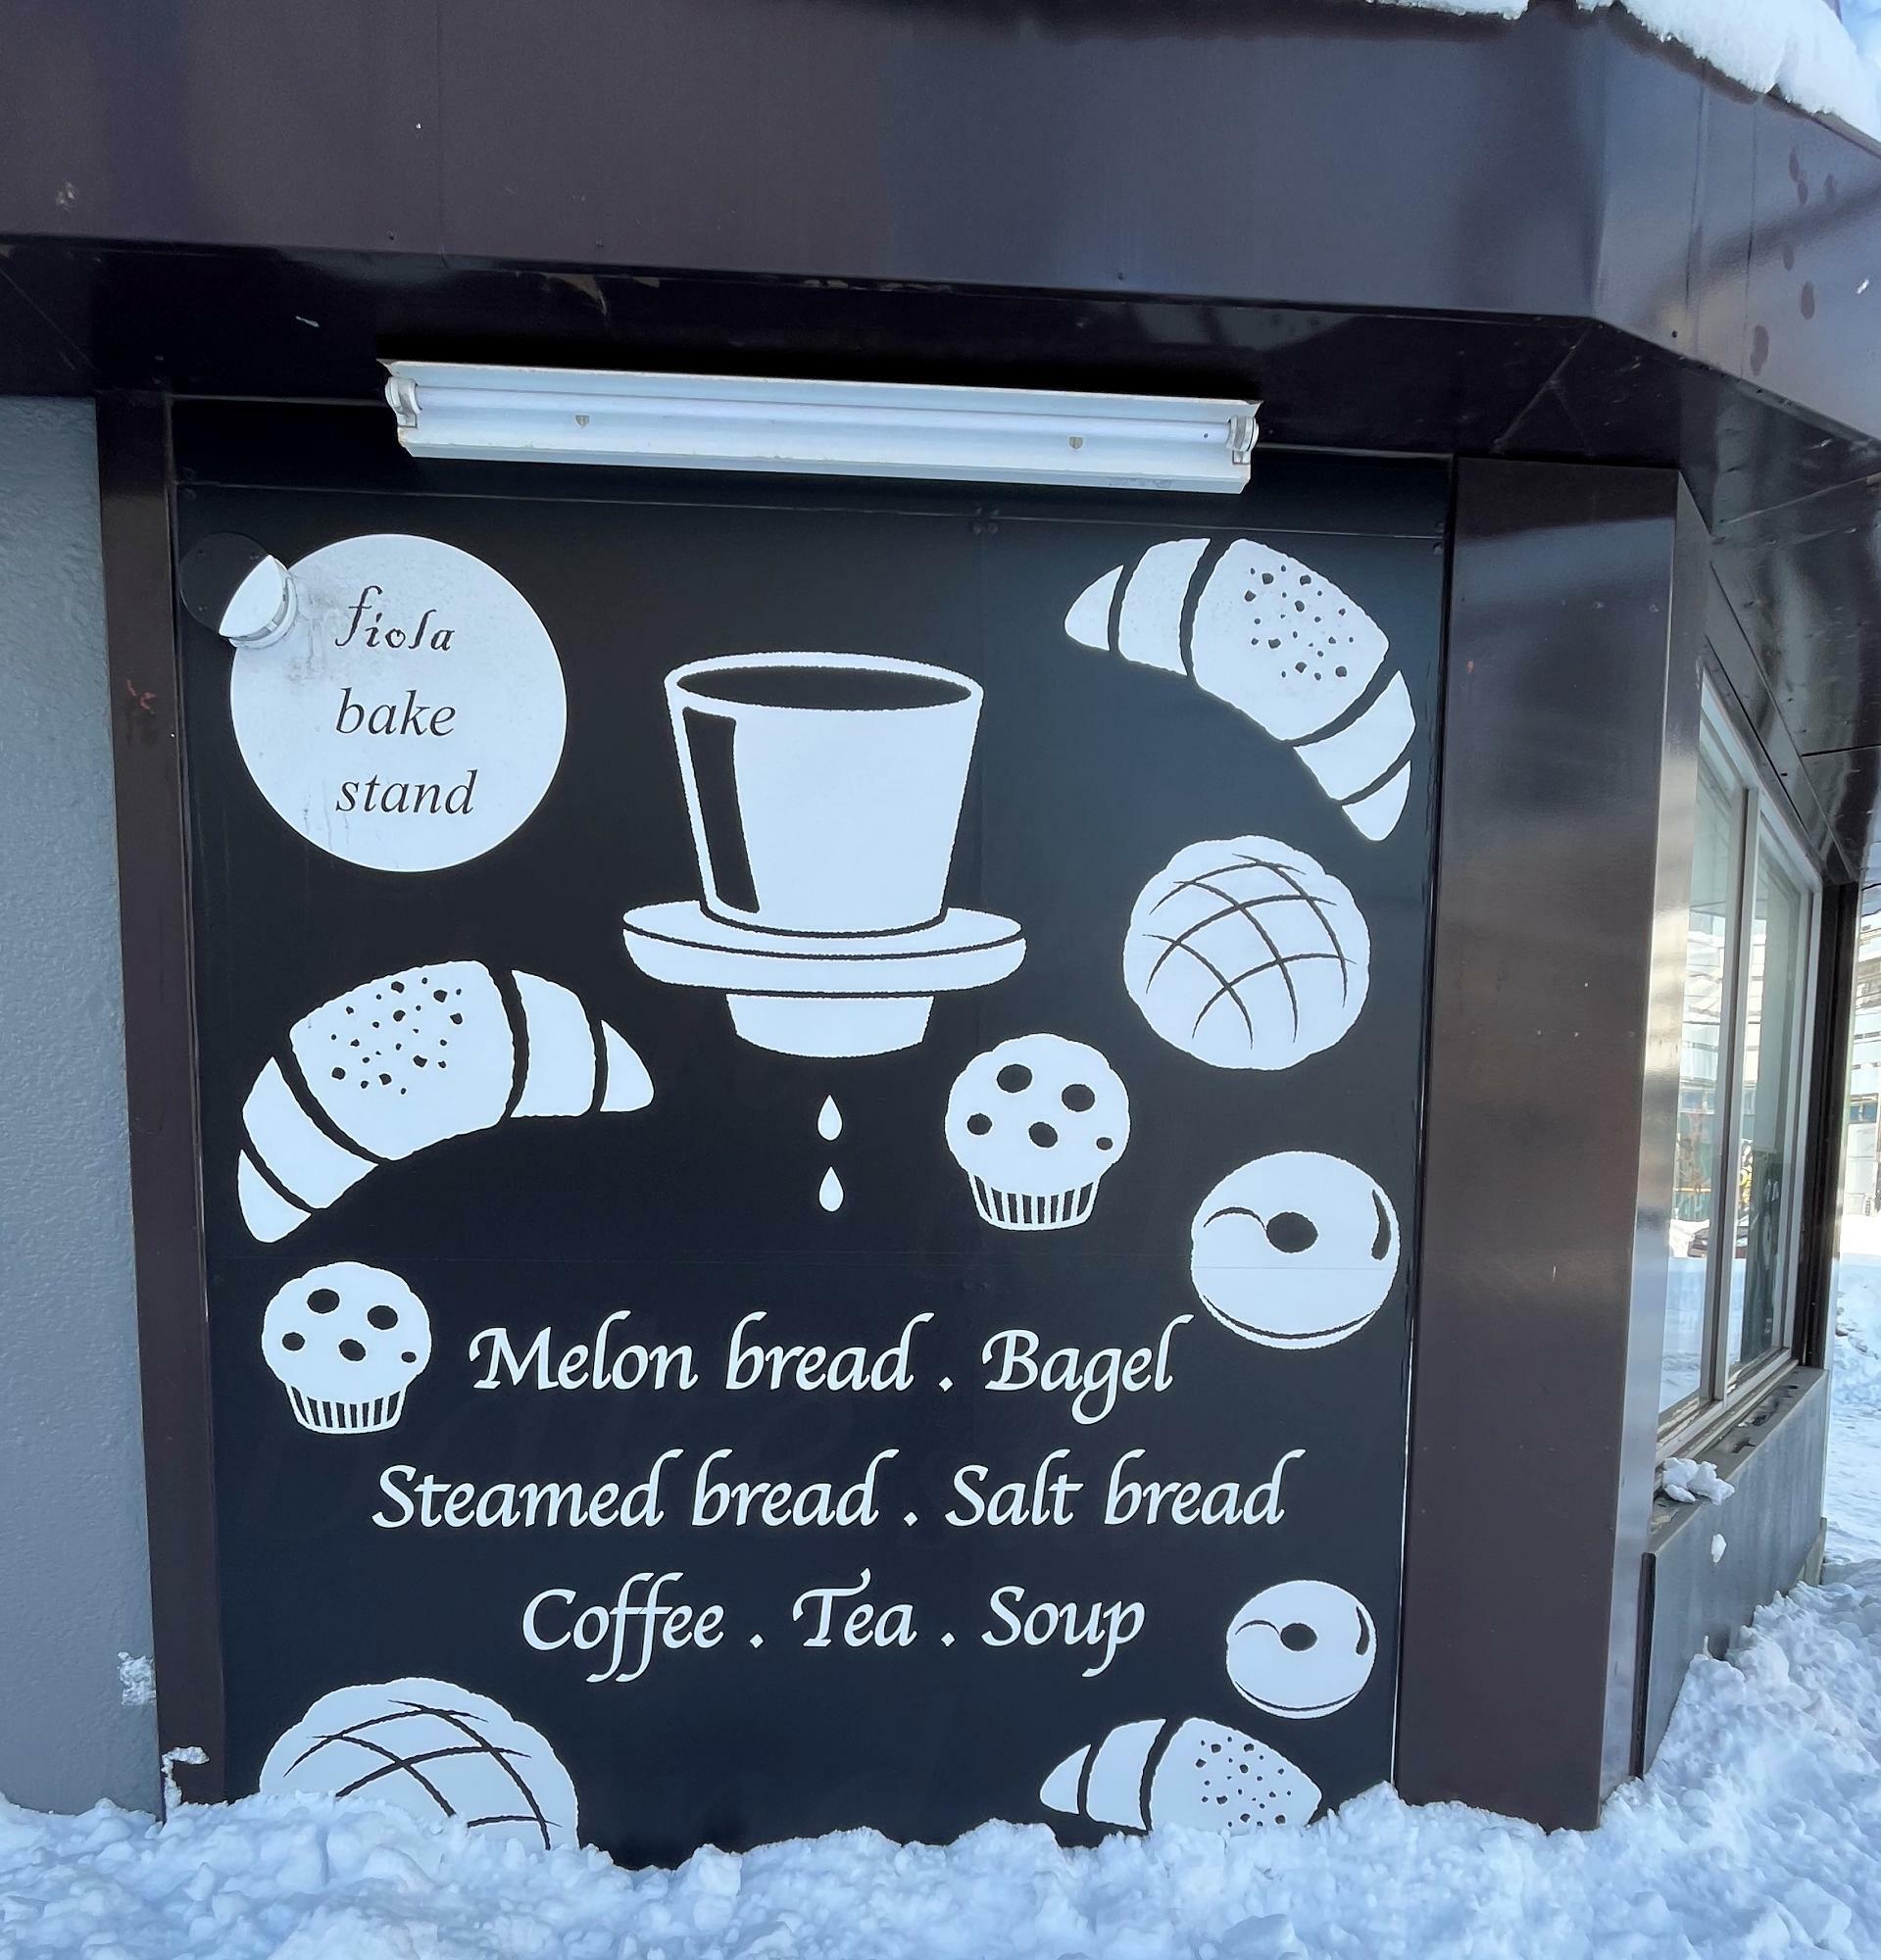 お店のパンが描かれている外壁